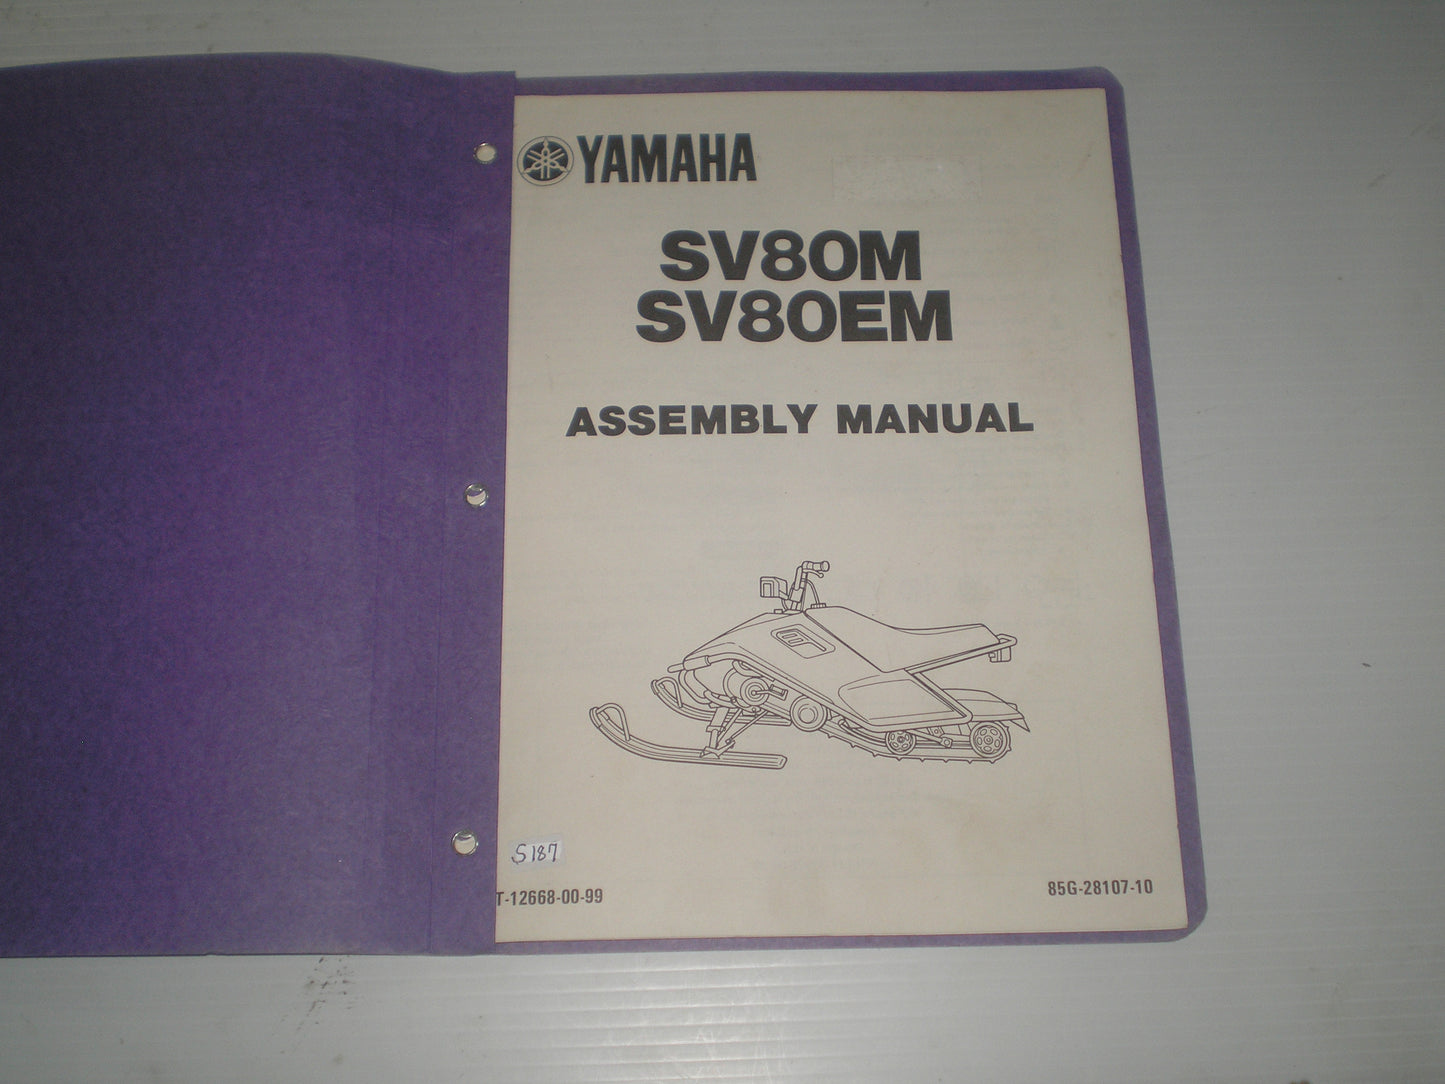 YAMAHA SV80 M & SV80E M  SnoScoot  1988  Assembly Manual  85G-28107-10  LIT-12668-00-99  #S187